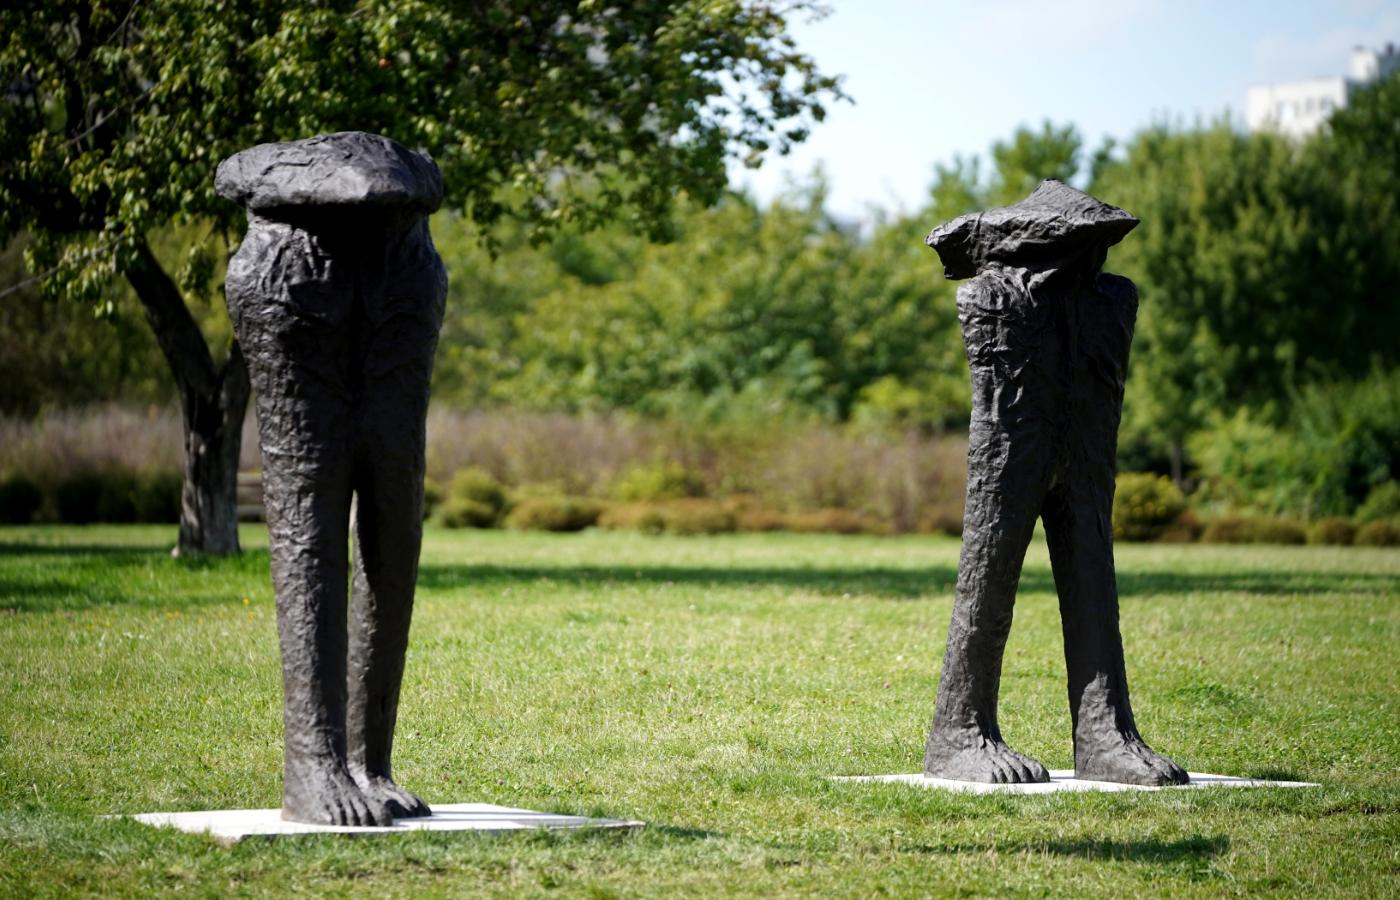 Rzeźby Magdaleny Abakanowicz „Zinaxin” i „Dolacin” w Parku Rzeźby na Bródnie w Warszawie